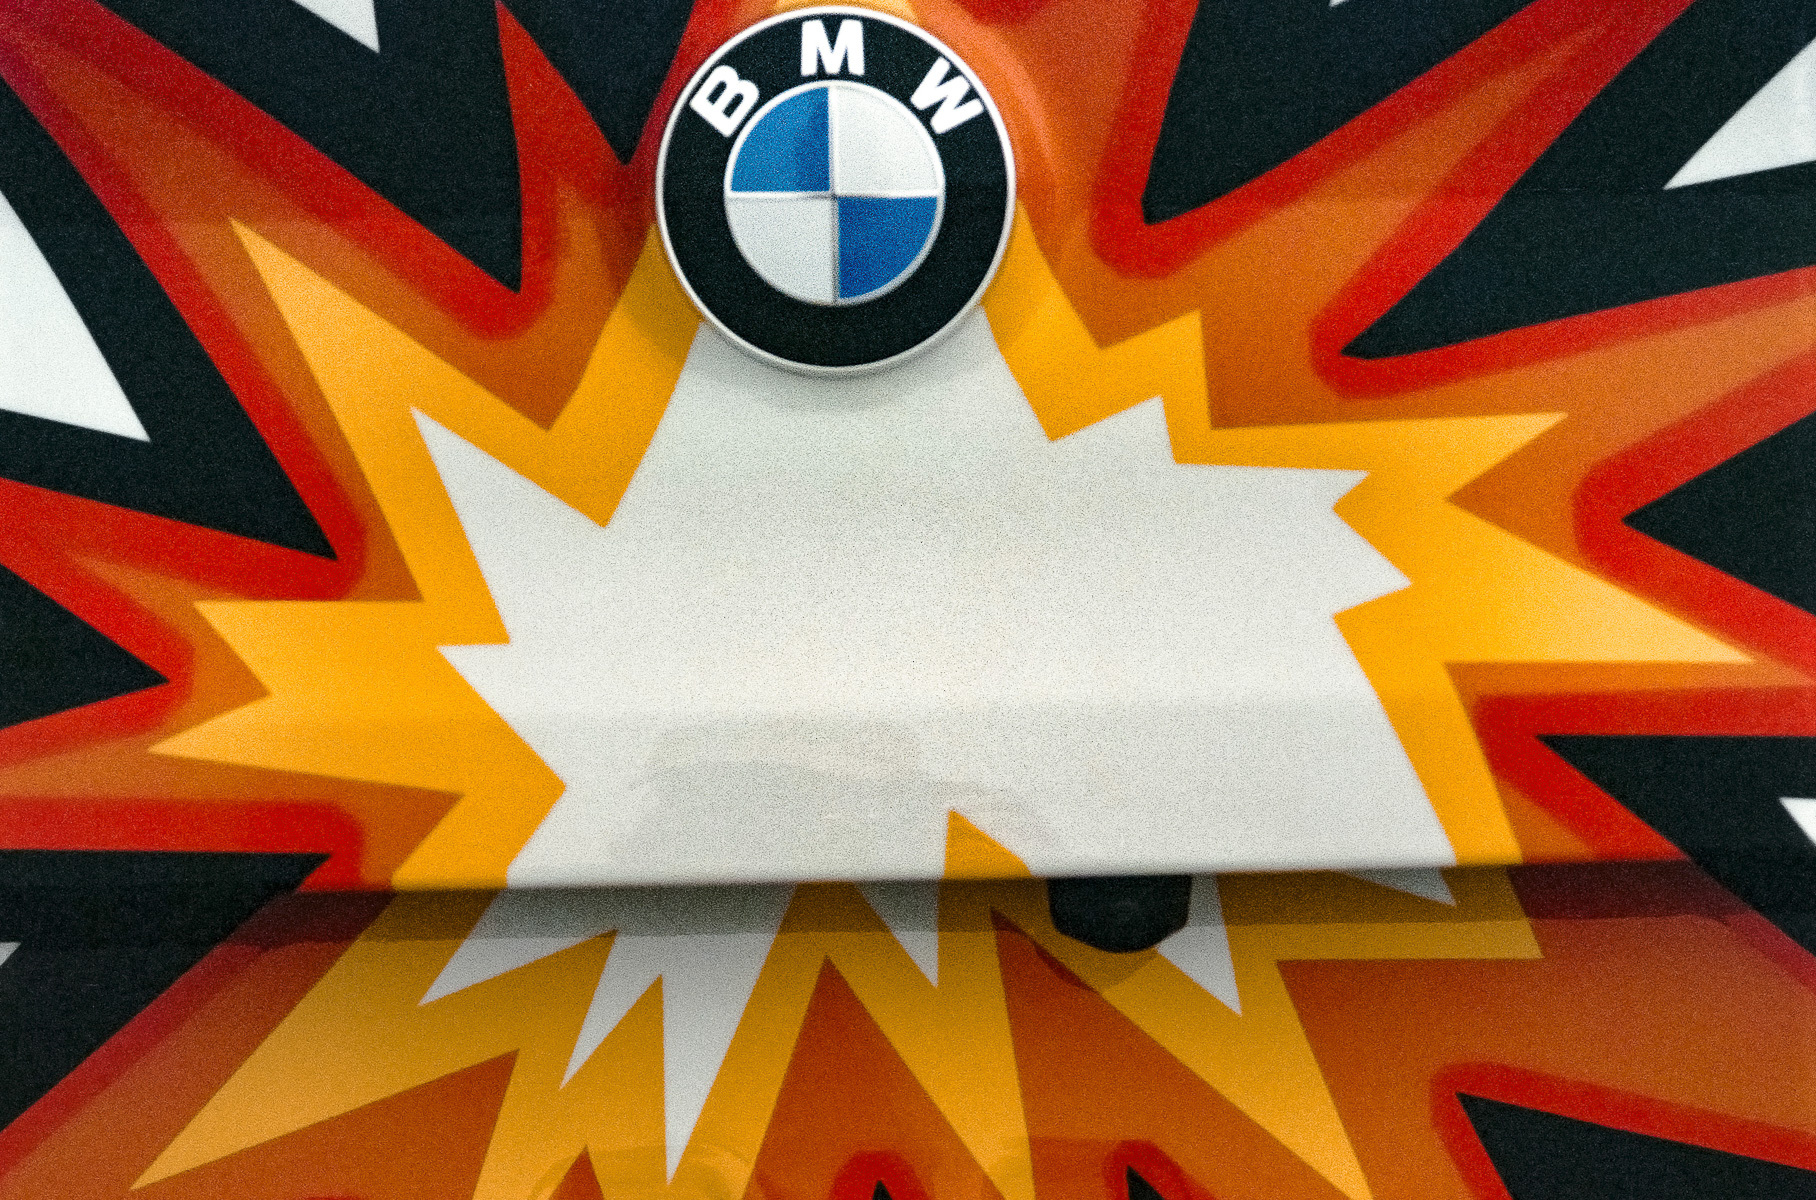 BMW представила 8 Series Gran Coupe с салоном в стиле «Человека-паука» и комиксами на кузове